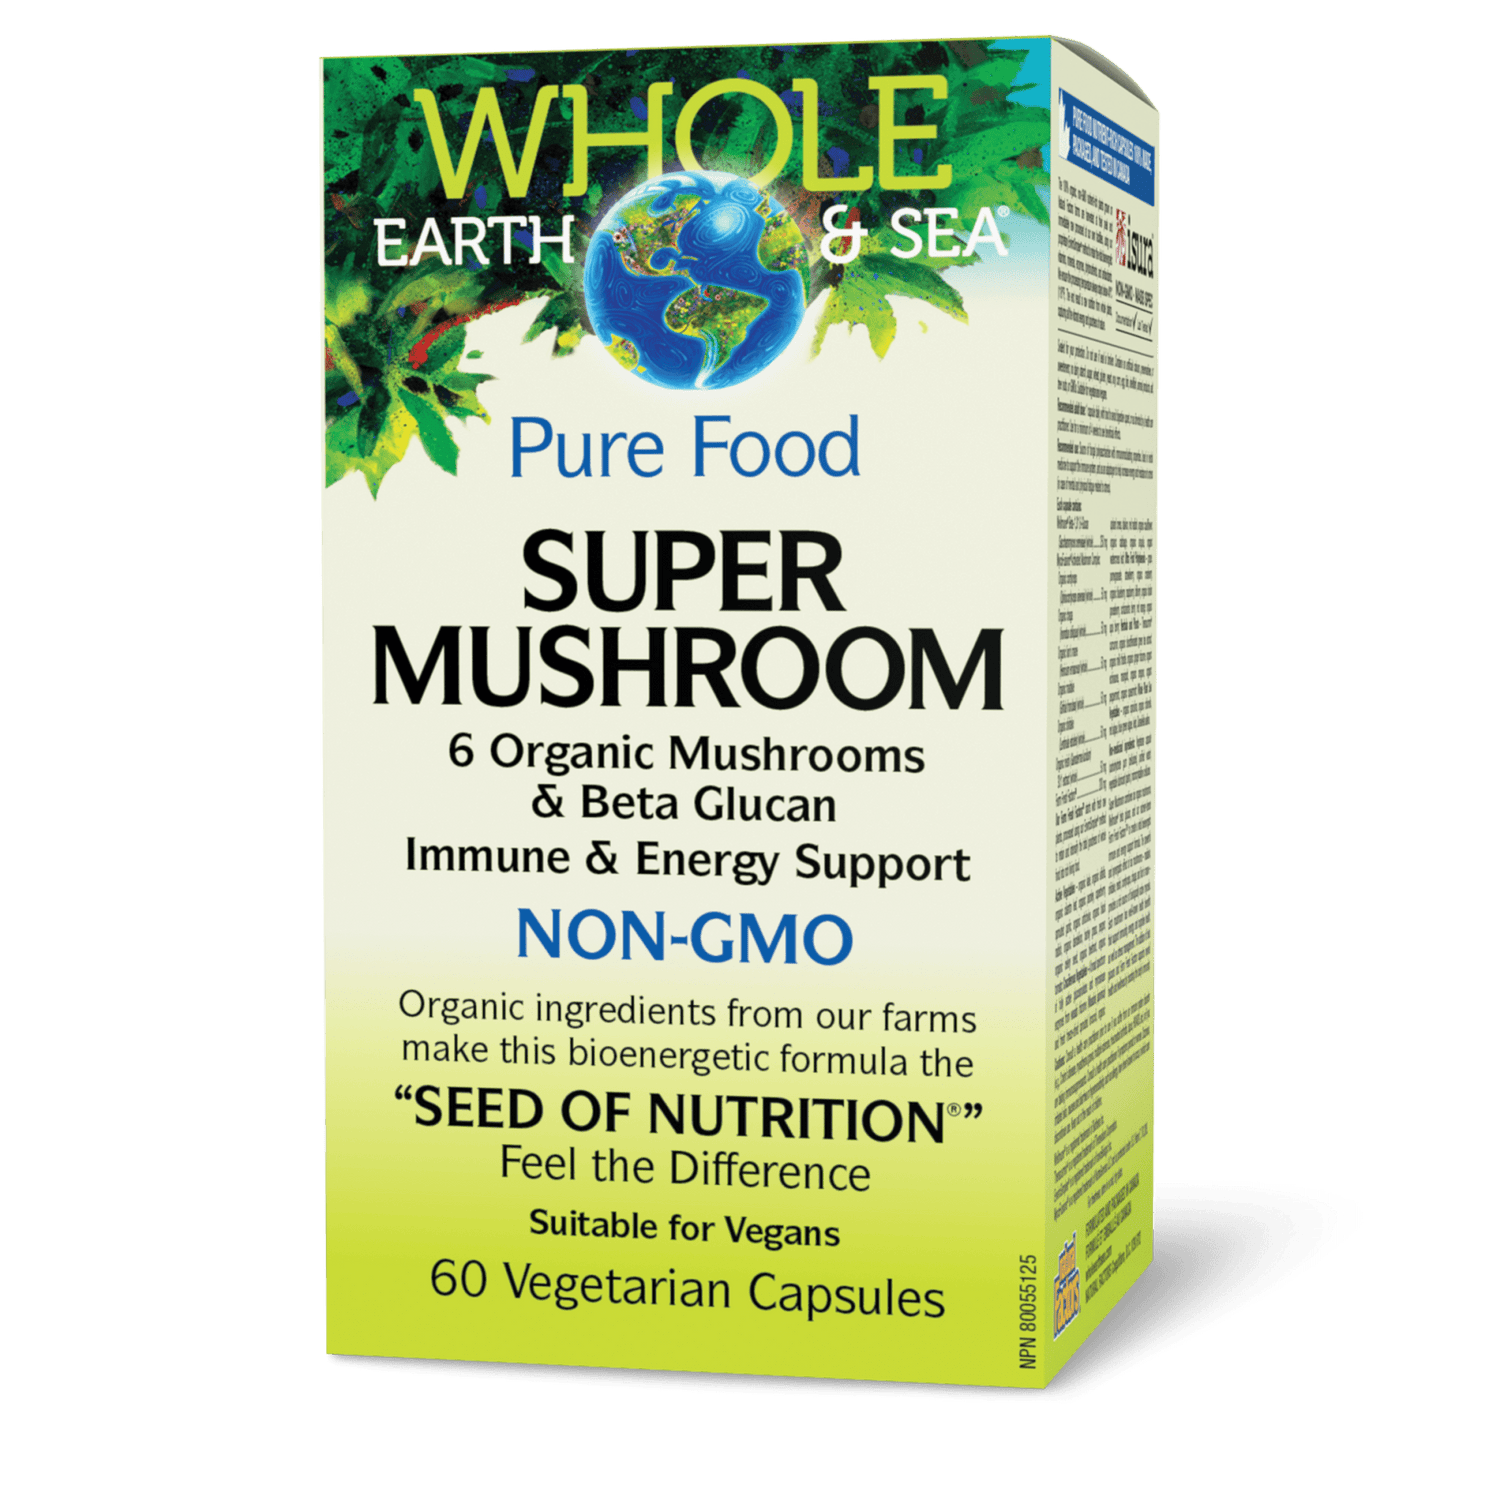 Super Mushroom, Whole Earth & Sea, Whole Earth & Sea®|v|image|35510